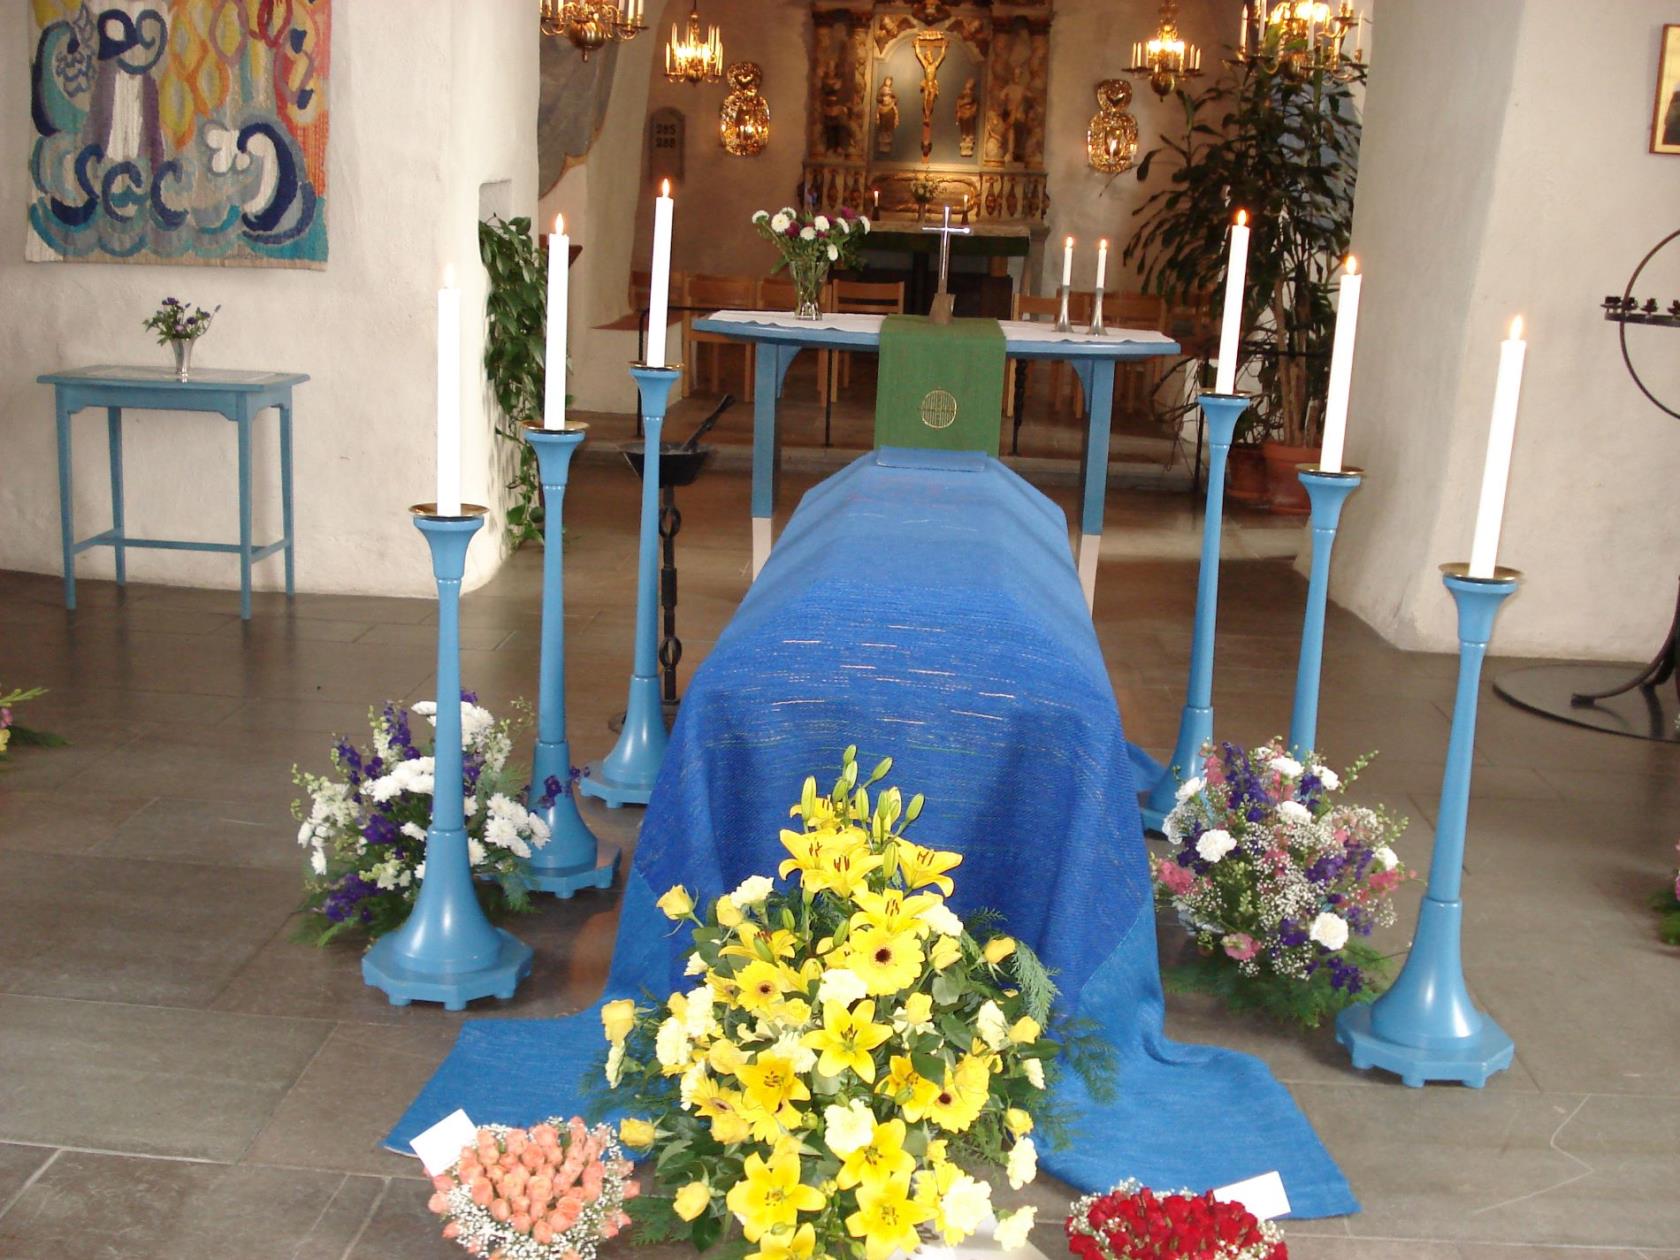 Kista i Ödeshögs kyrka. Ovanpå kistan ligger ett blått bårtäcke och och runt kistan står 6 höga träljusstakar med ljus och på golvet runt kistan ligger blombuketter.